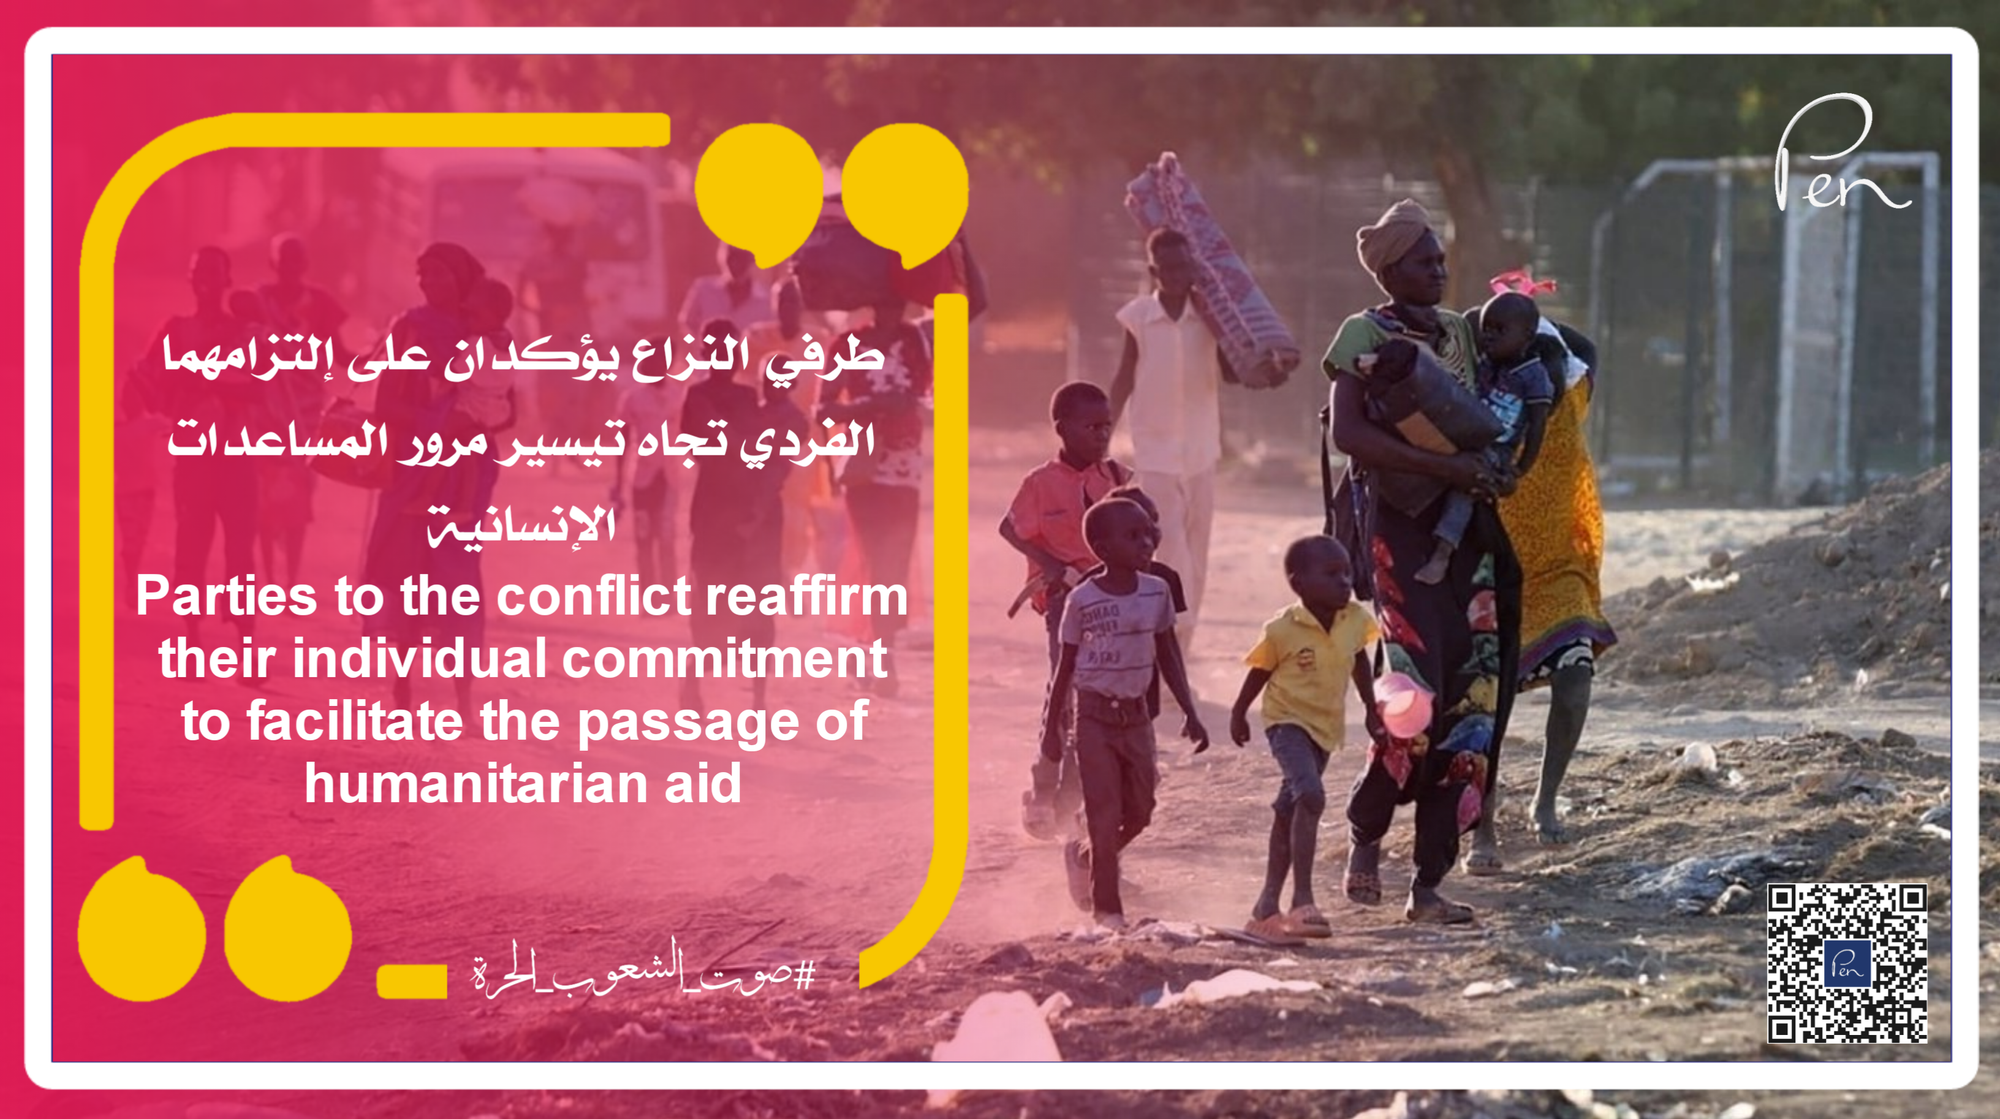 طرفي النزاع يؤكدان على إلتزامهما الفردي تجاه تيسير مرور المساعدات الإنسانية